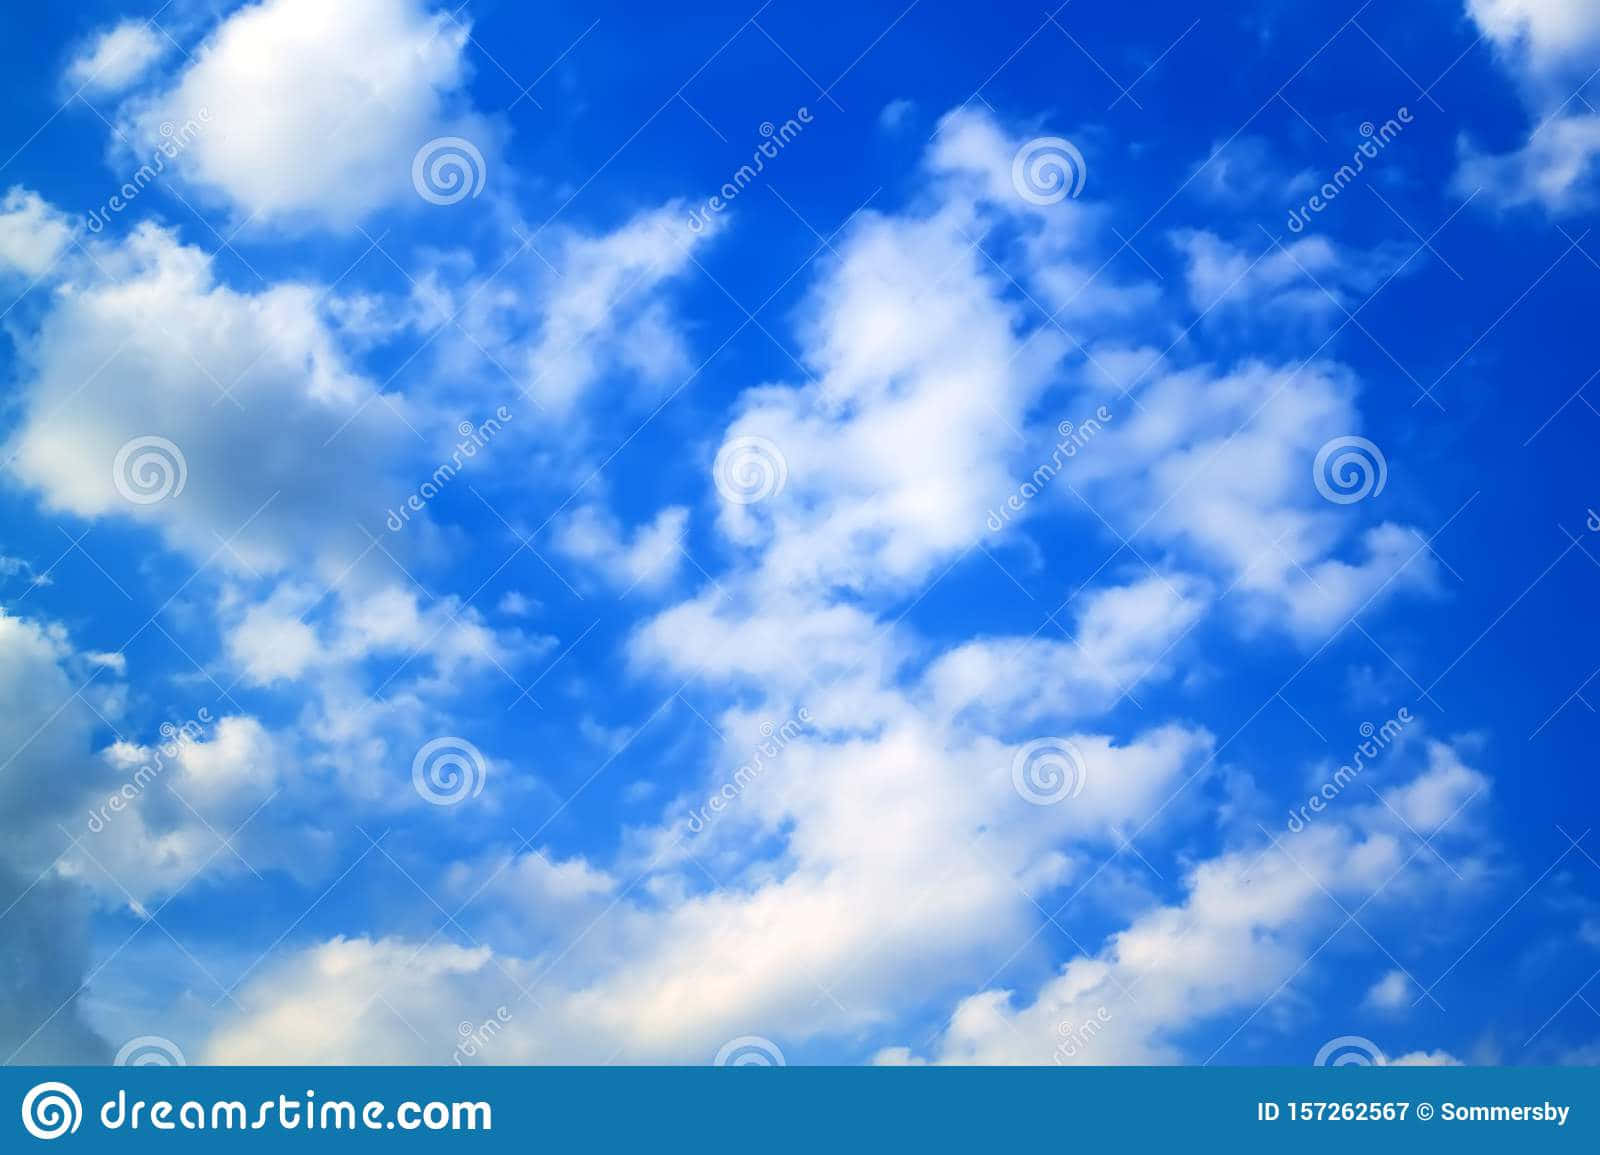 Blauerhimmel Mit Weißen Wolken Stockfoto Bild Wallpaper